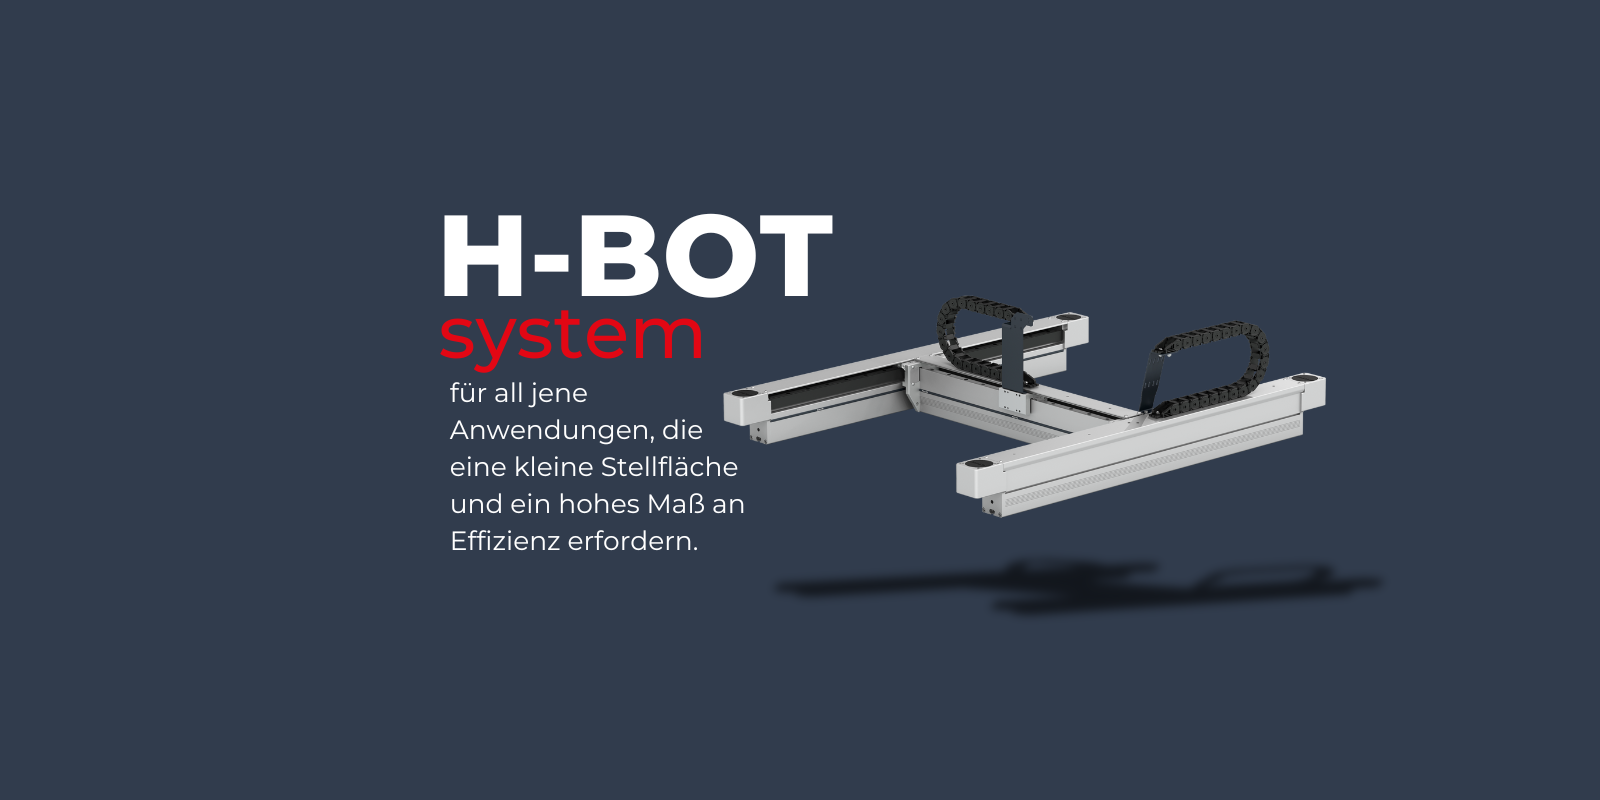 Entdecken Sie das neue H-Bot Portalsystem